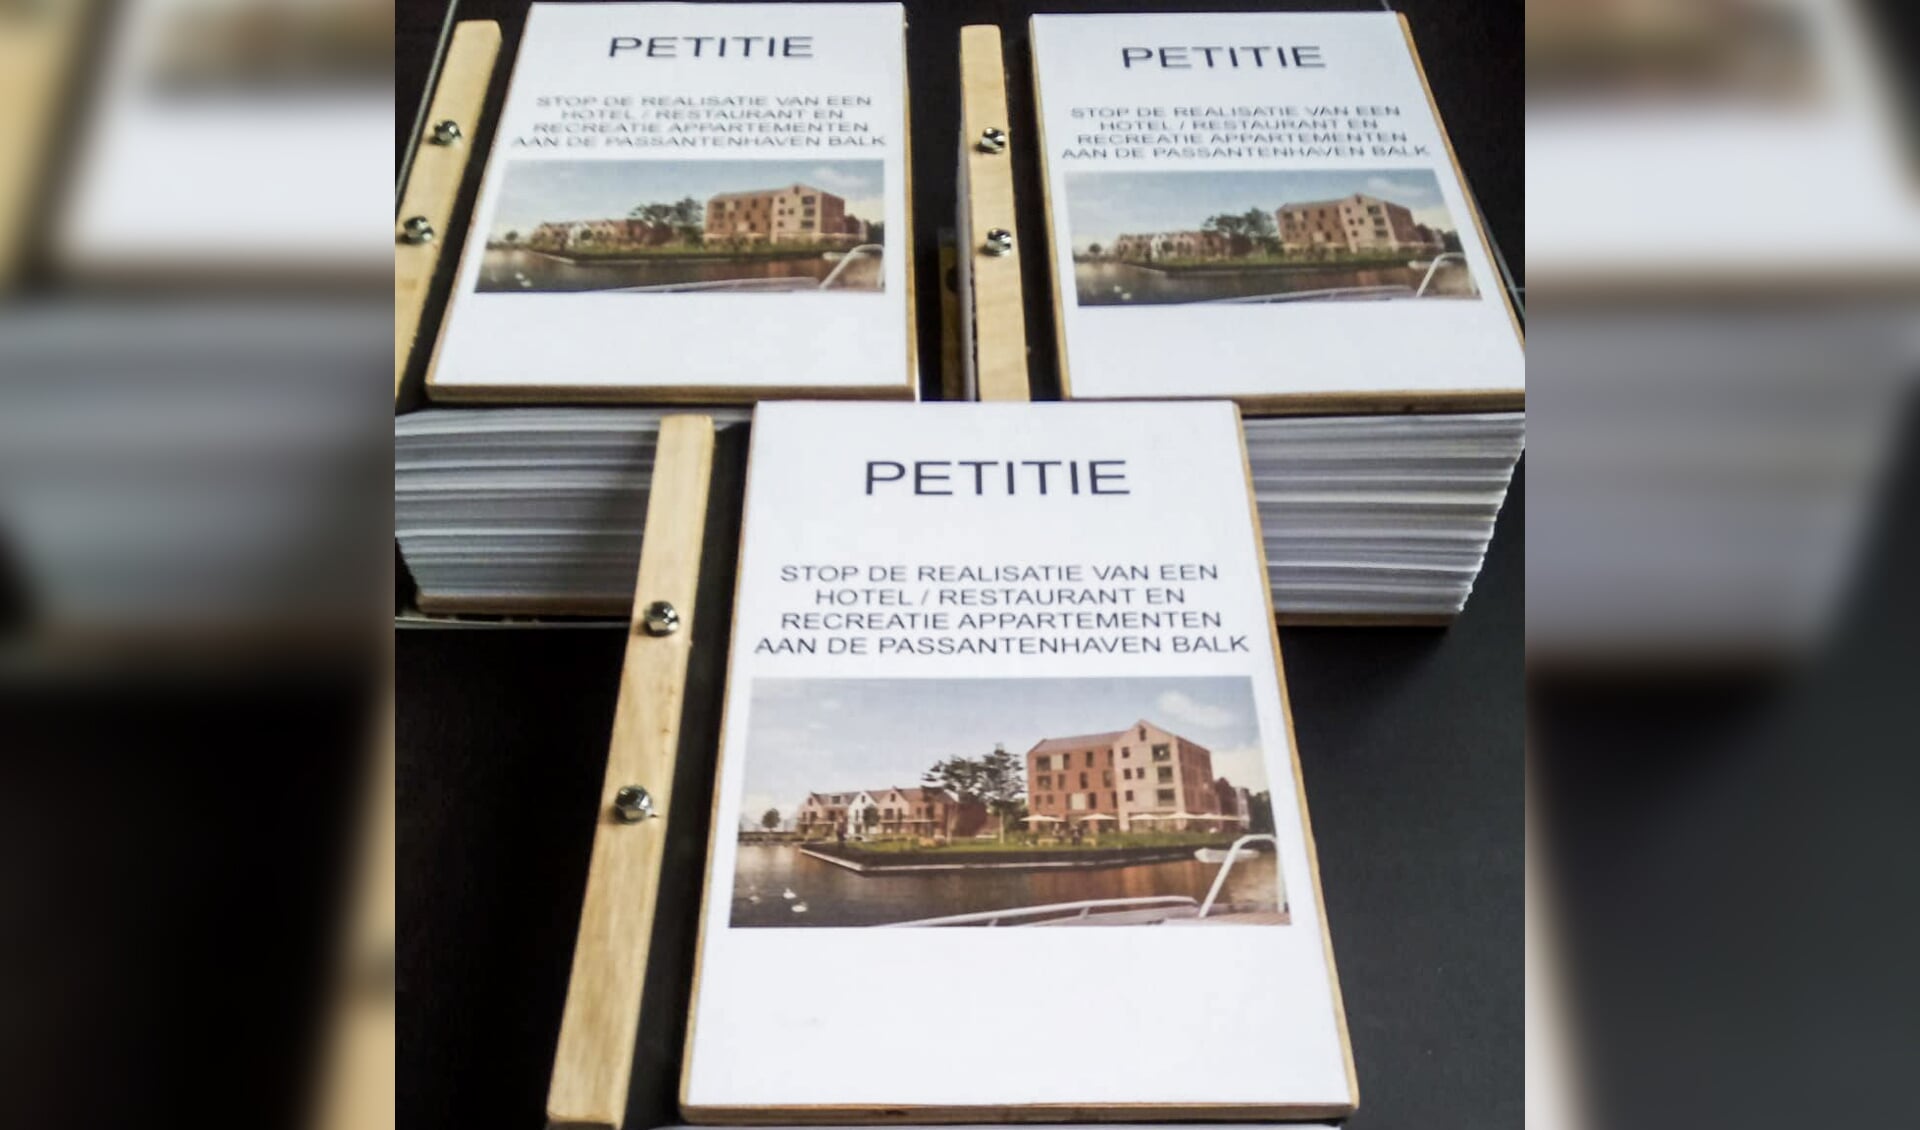 Ruim 2500 handtekeningen tegn de komst van een hotel bij de passantenhaven in Balk.